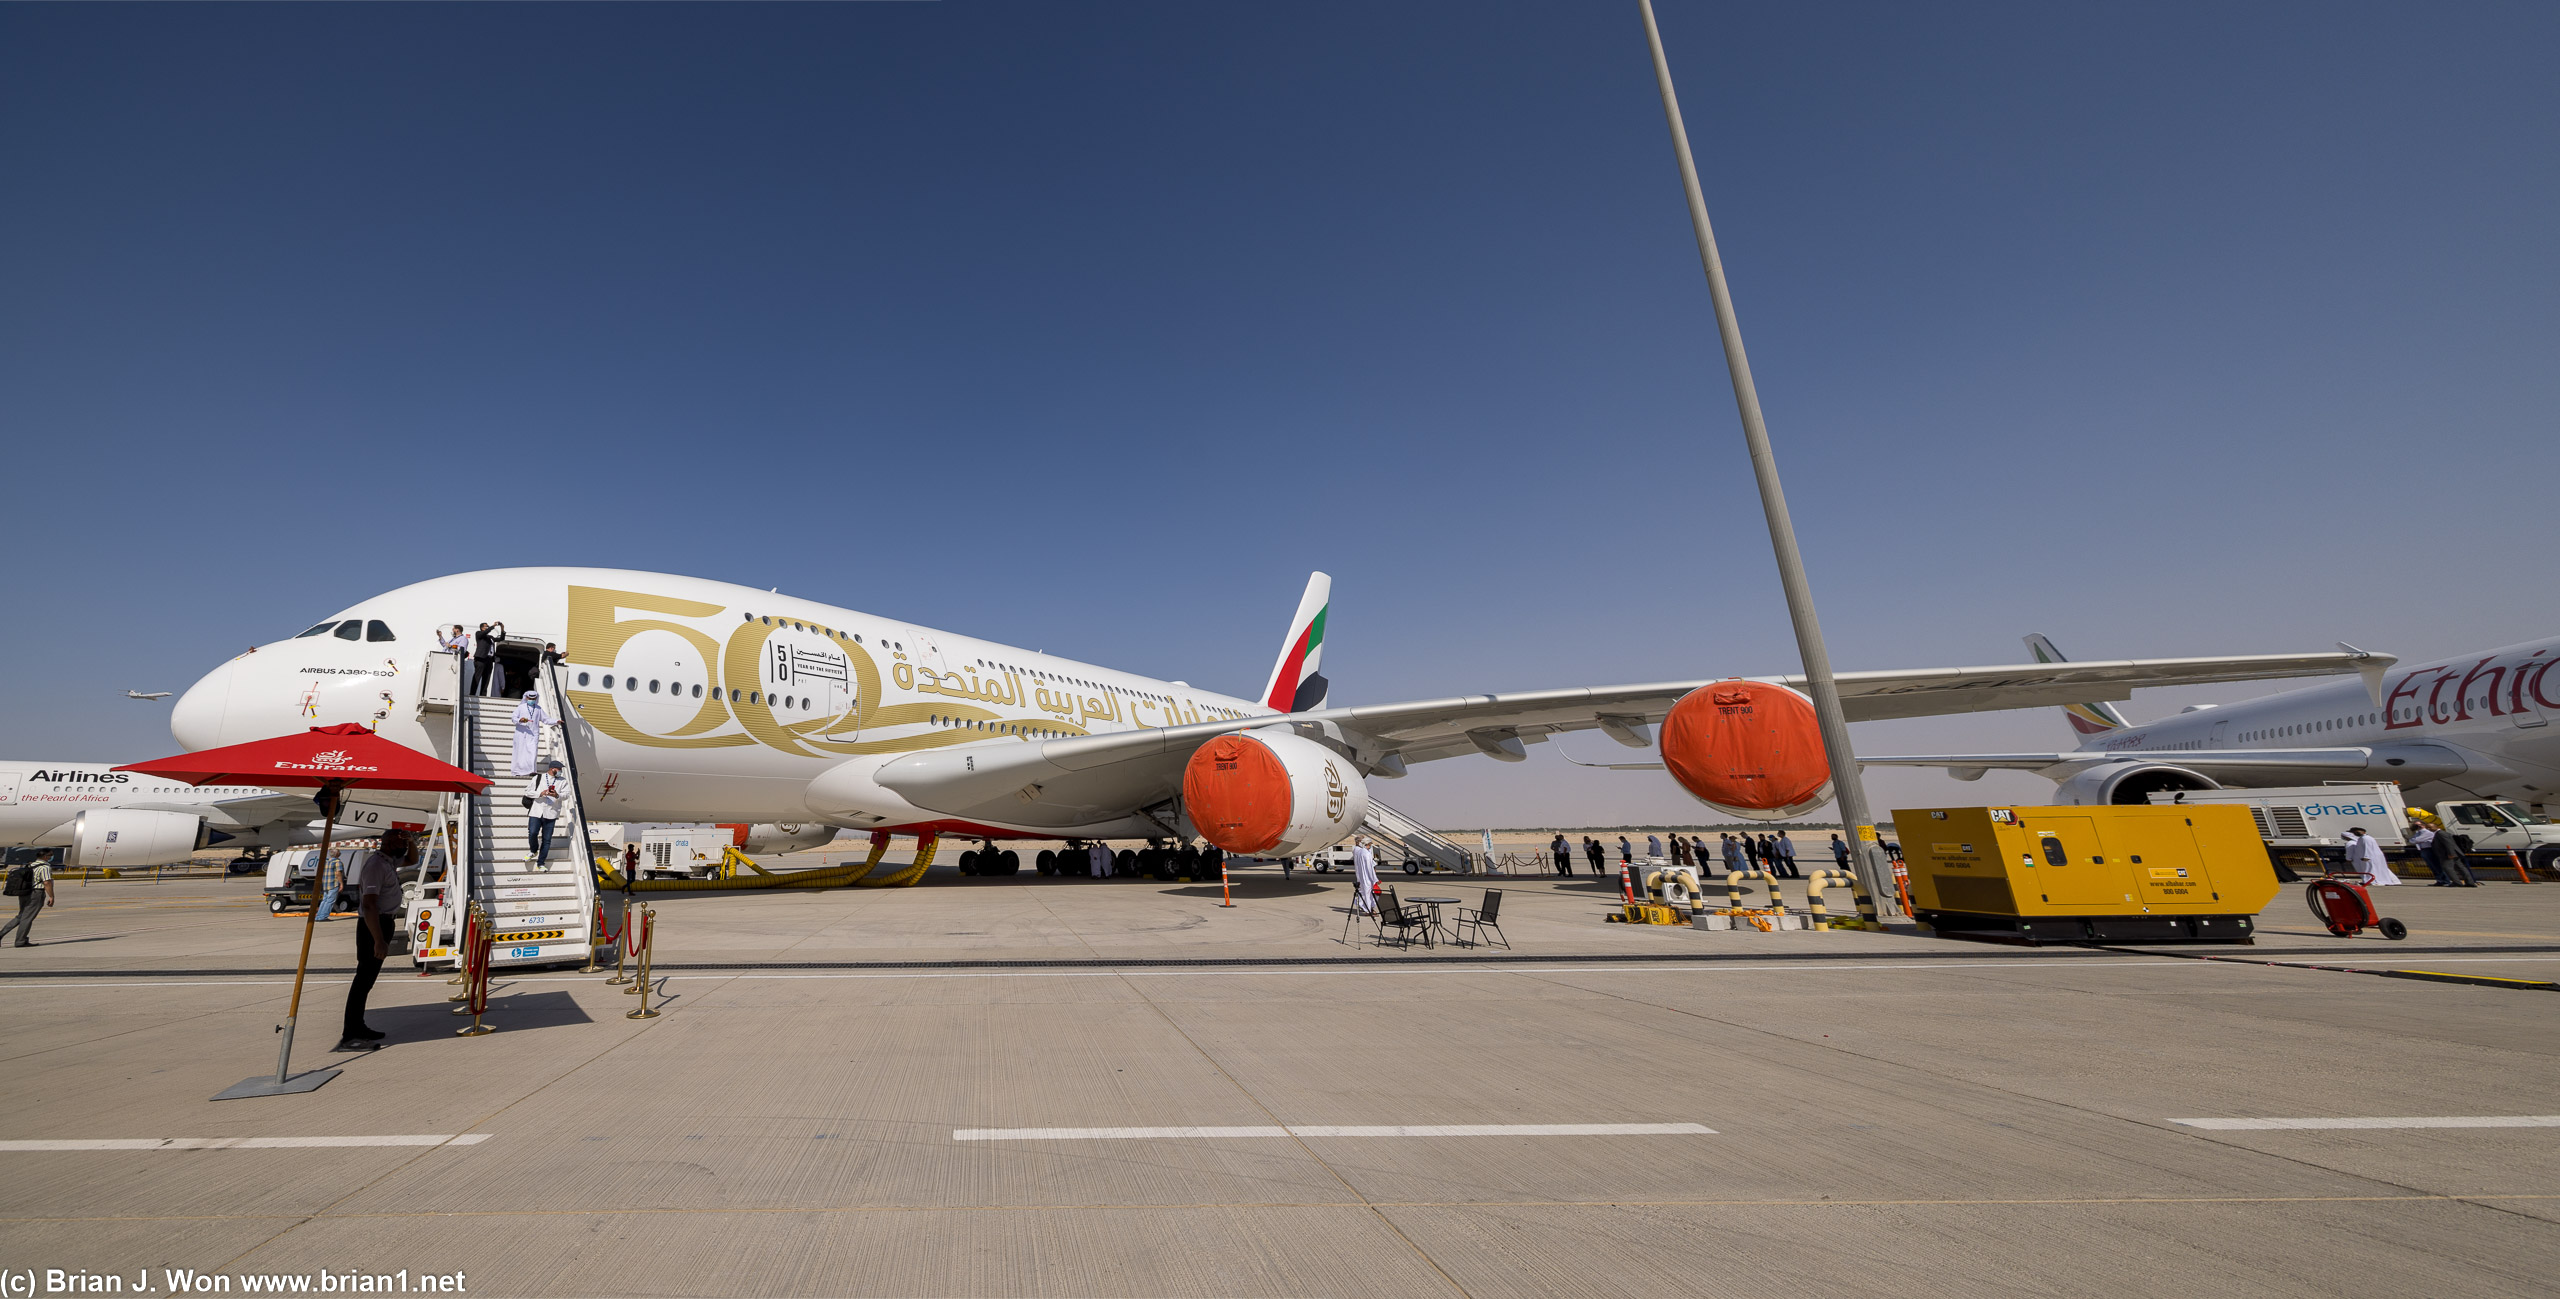 Emirates Airbus A380-800.